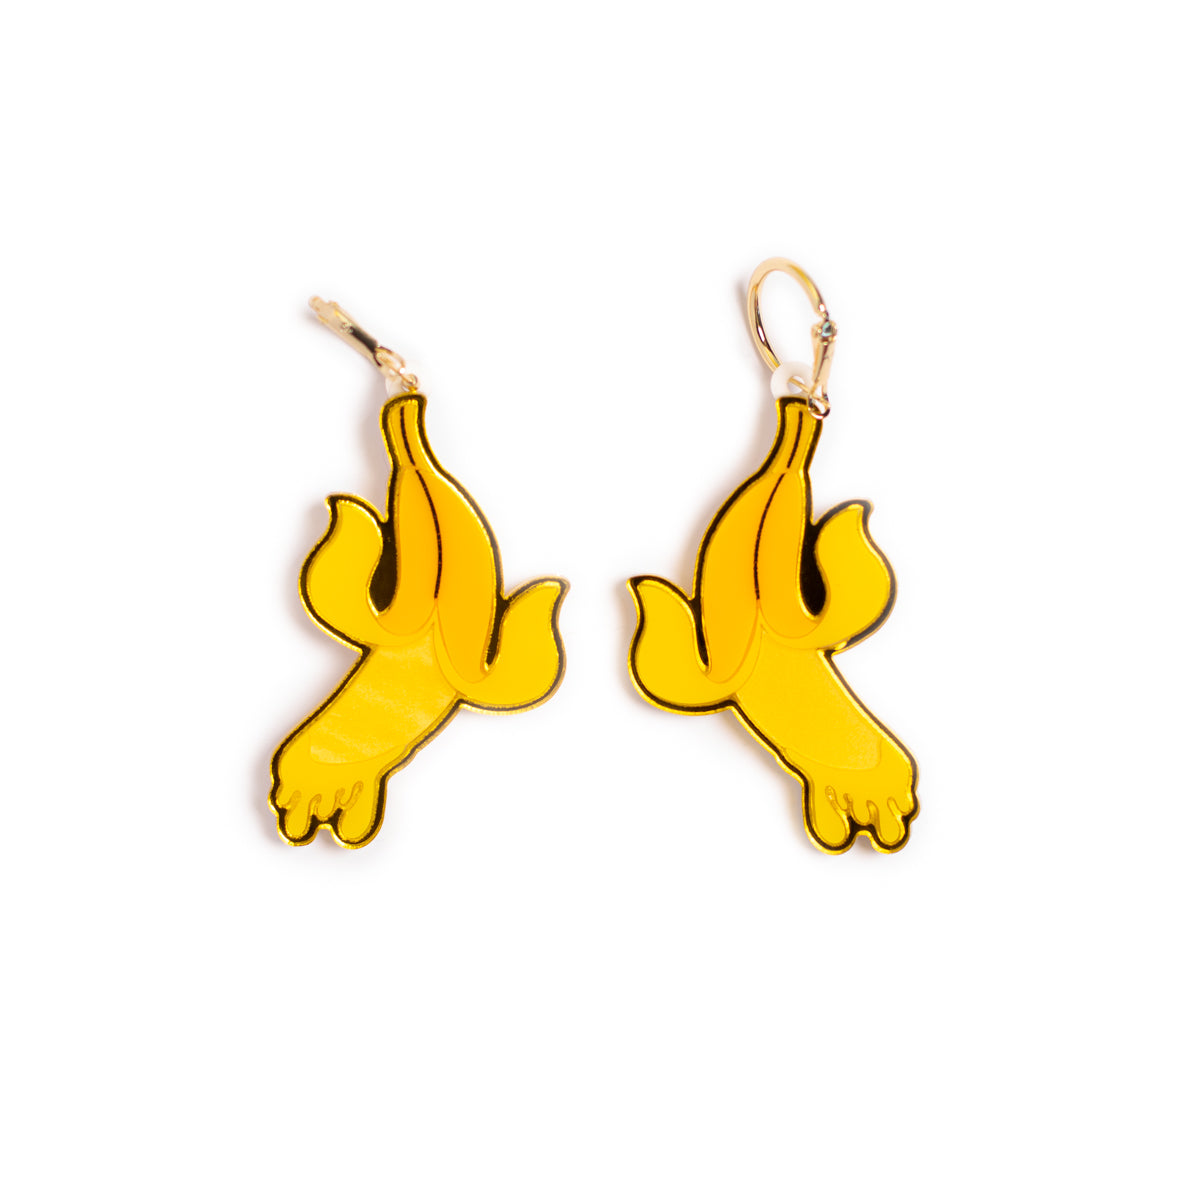 The Banana Earrings